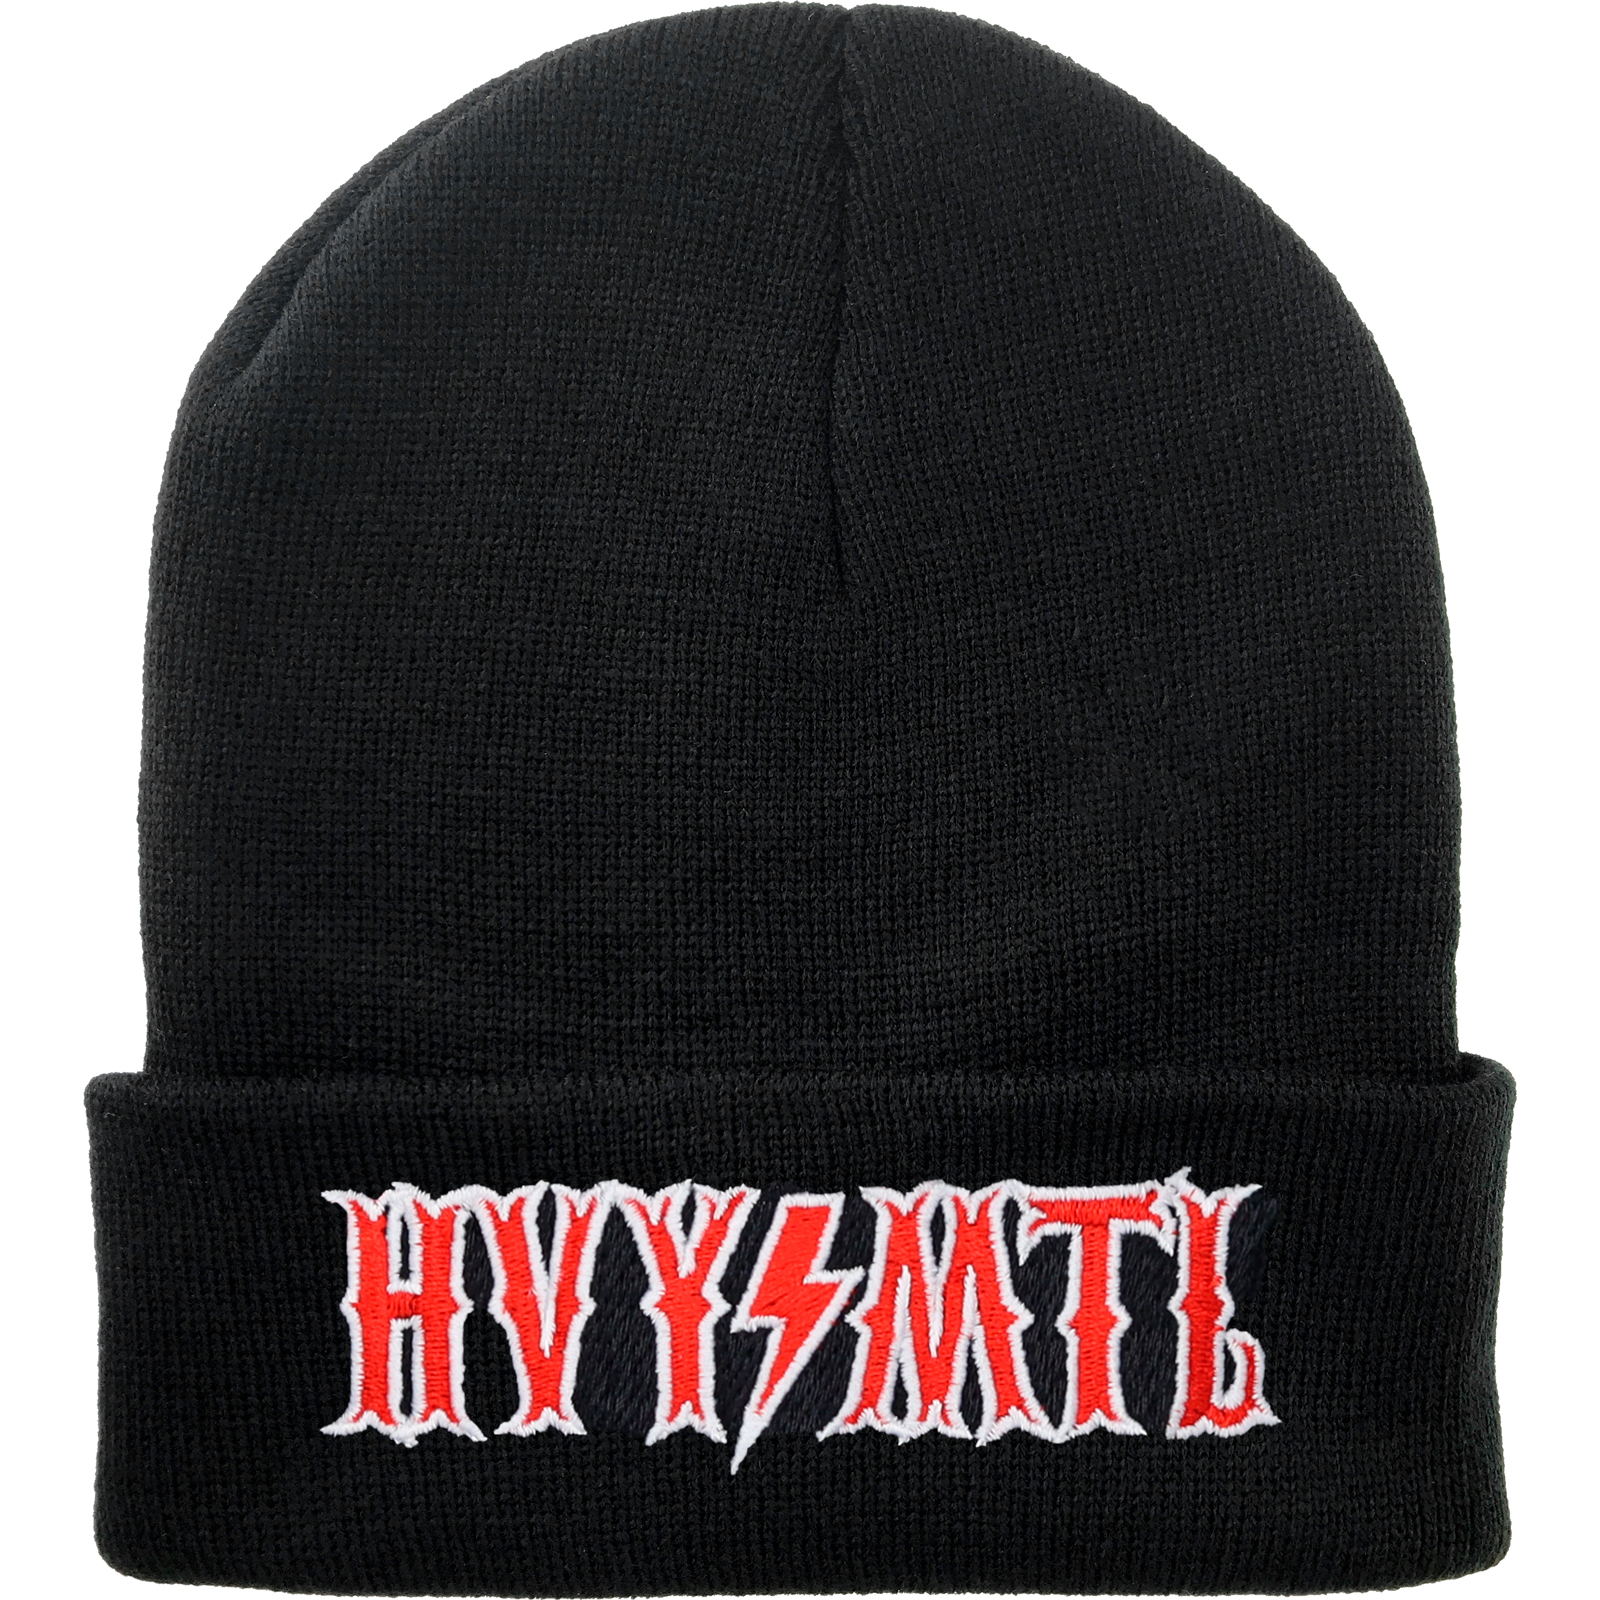 HVYMTL (Heavy Metal) - Strickmütze